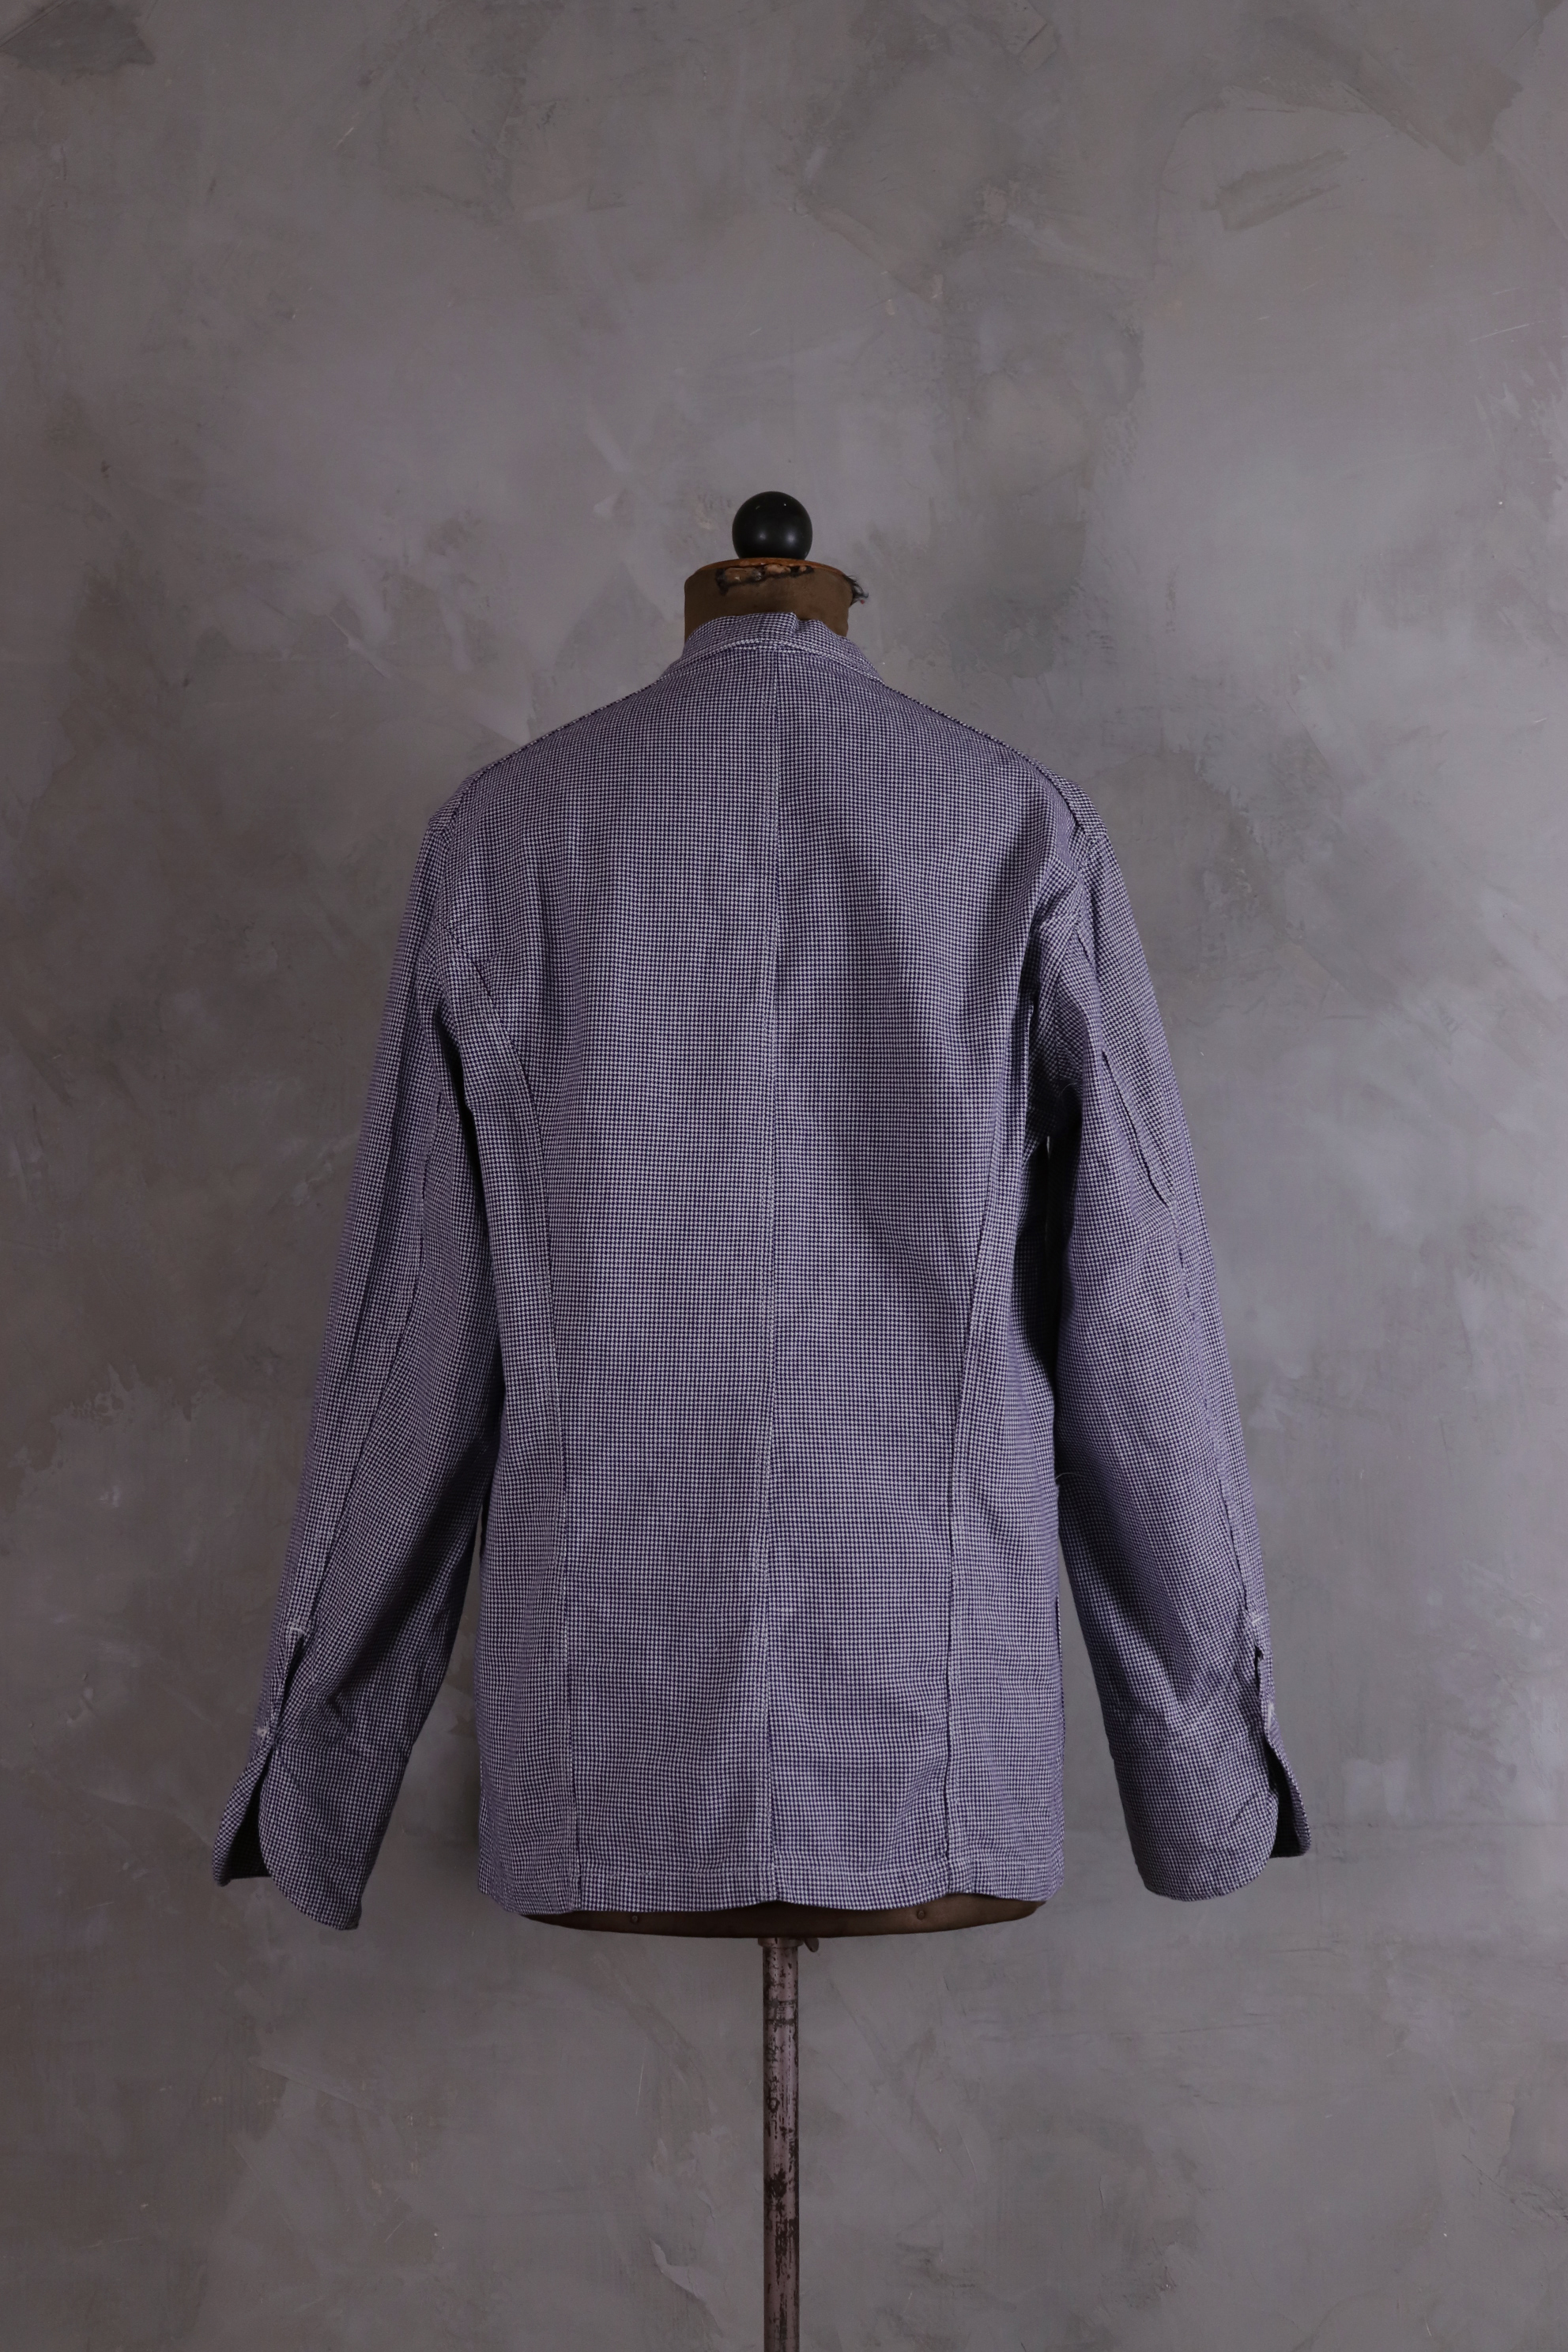 Levi's Vintage Clothing Lot 3356 Indigo Check Sack Coat